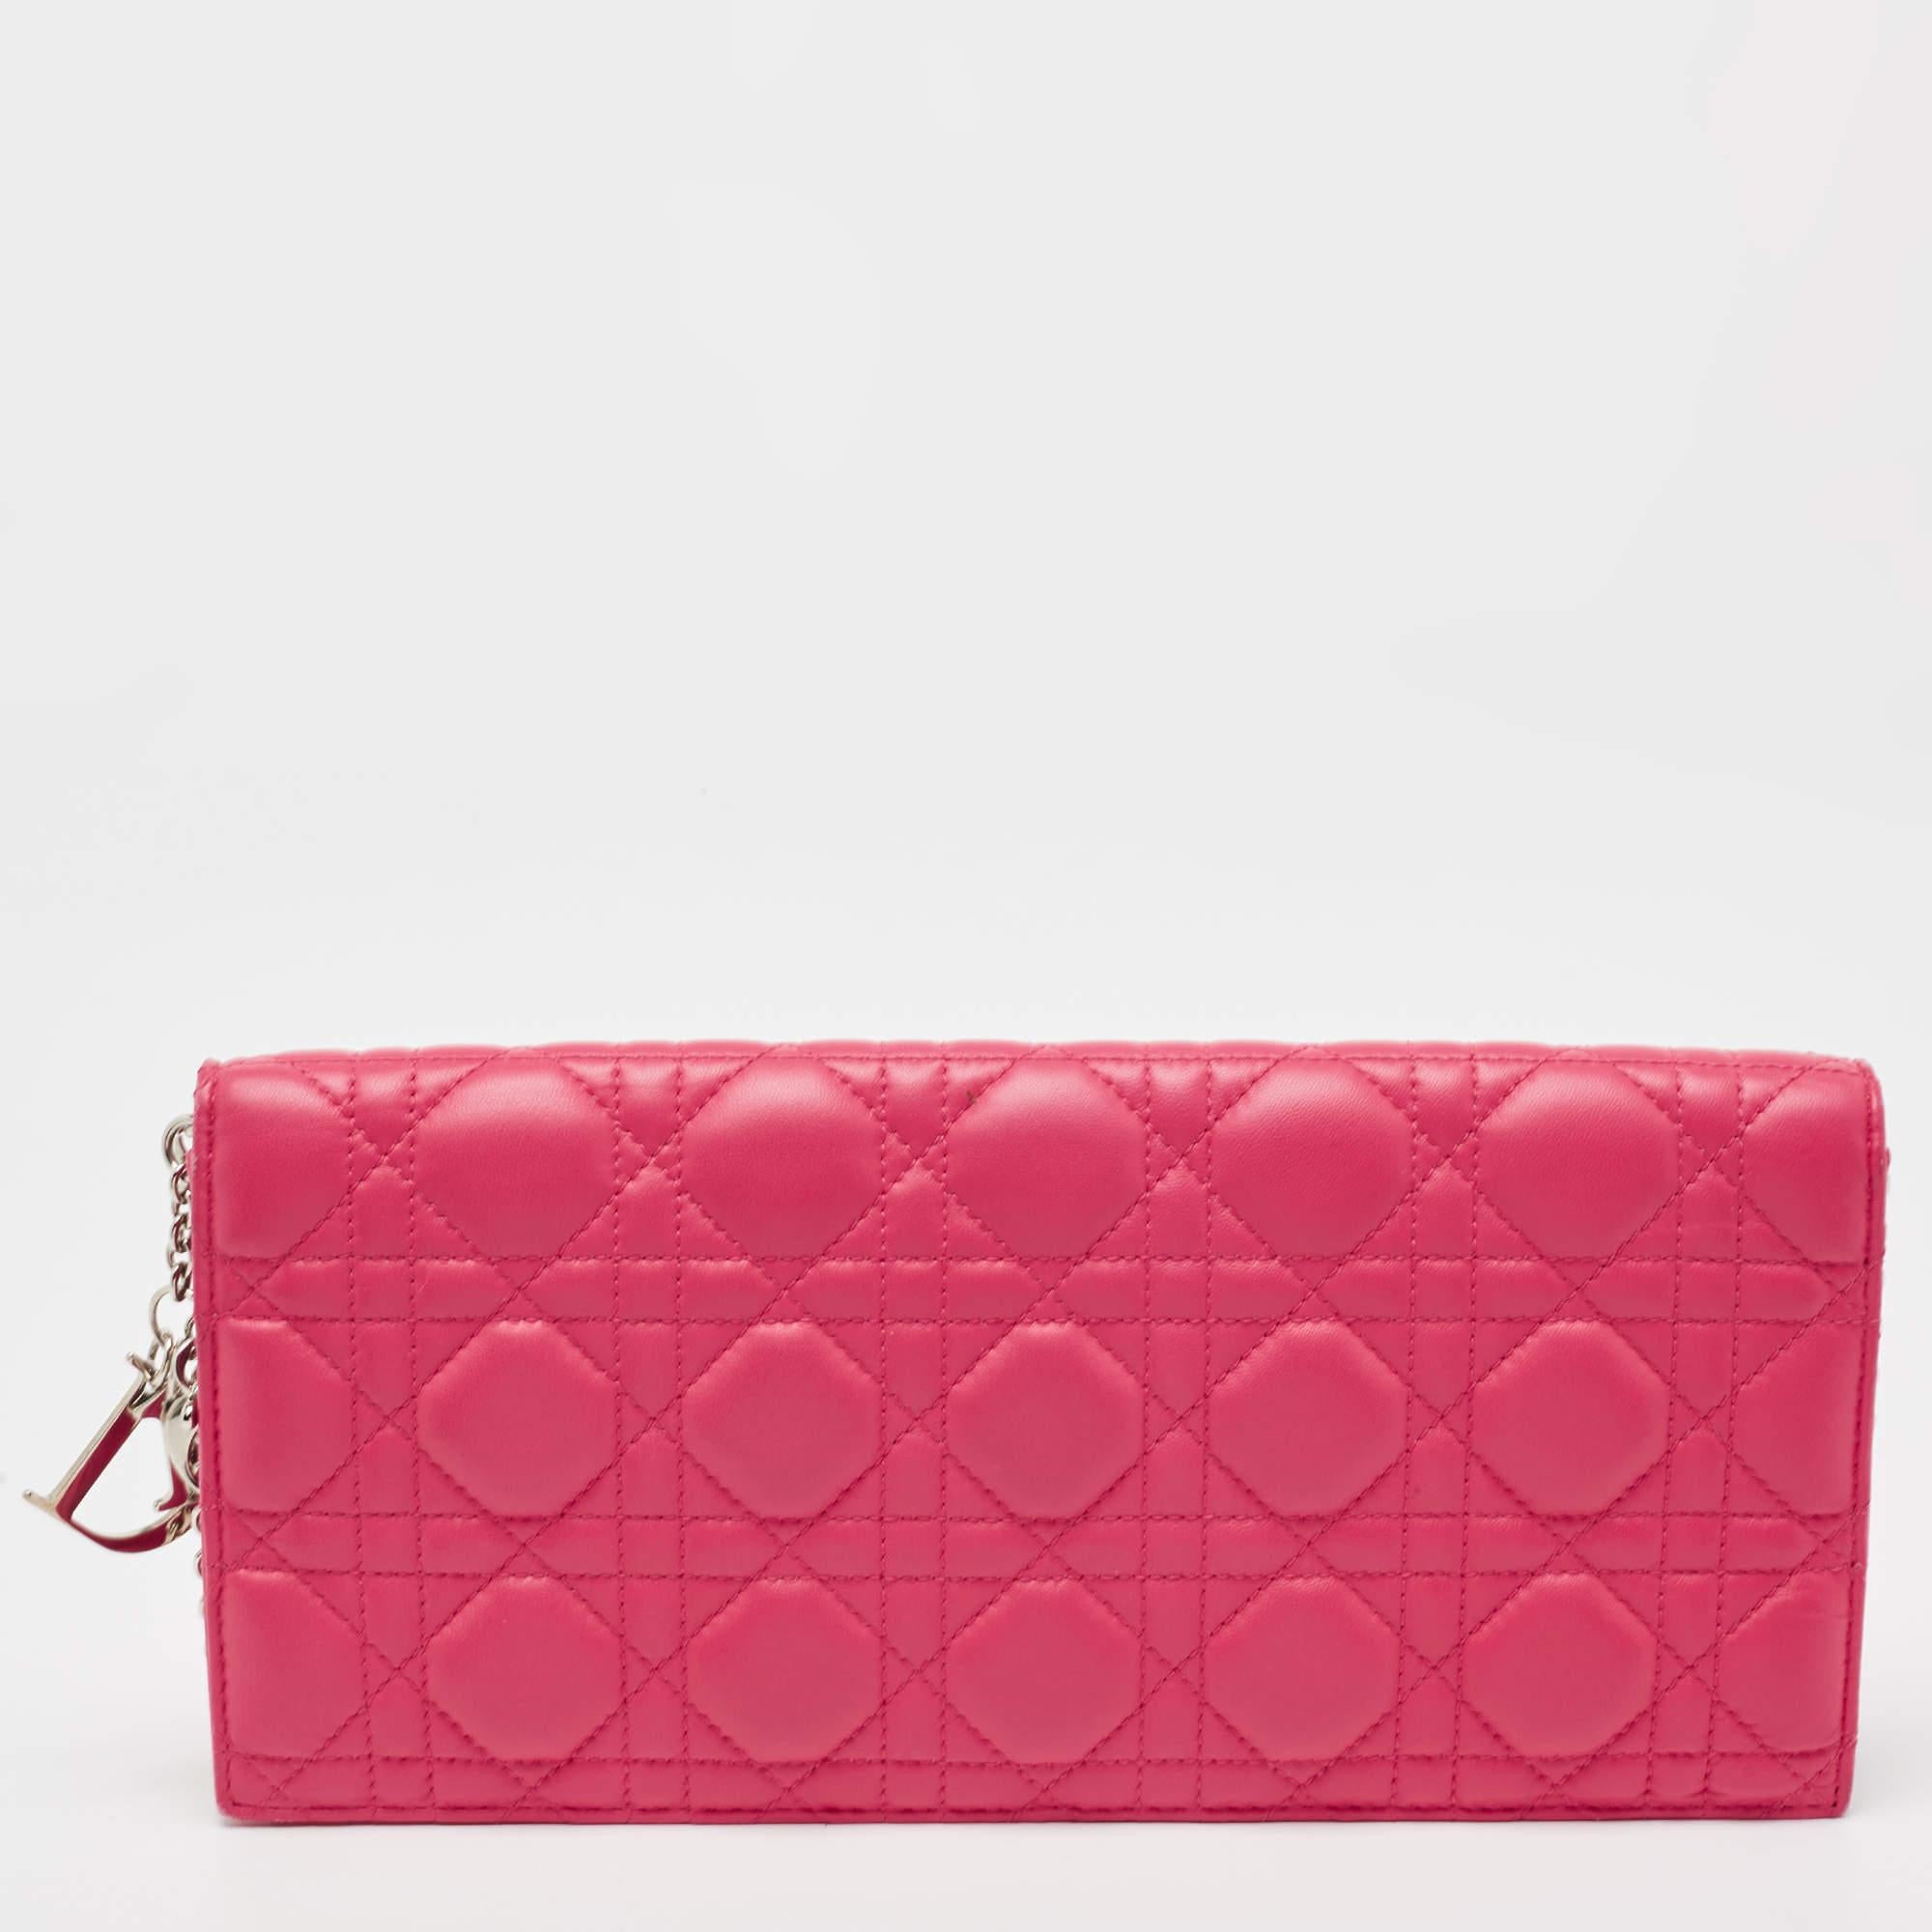 Dieses Etui von Lady Dior ist für den häufigen Gebrauch bestimmt. Sie ist aus rosafarbenem Leder gefertigt und verfügt über die Cannage-Steppdecke und einen Klappenverschluss. Das stoffgefütterte Innere beherbergt ein Steckfach.

Enthält: